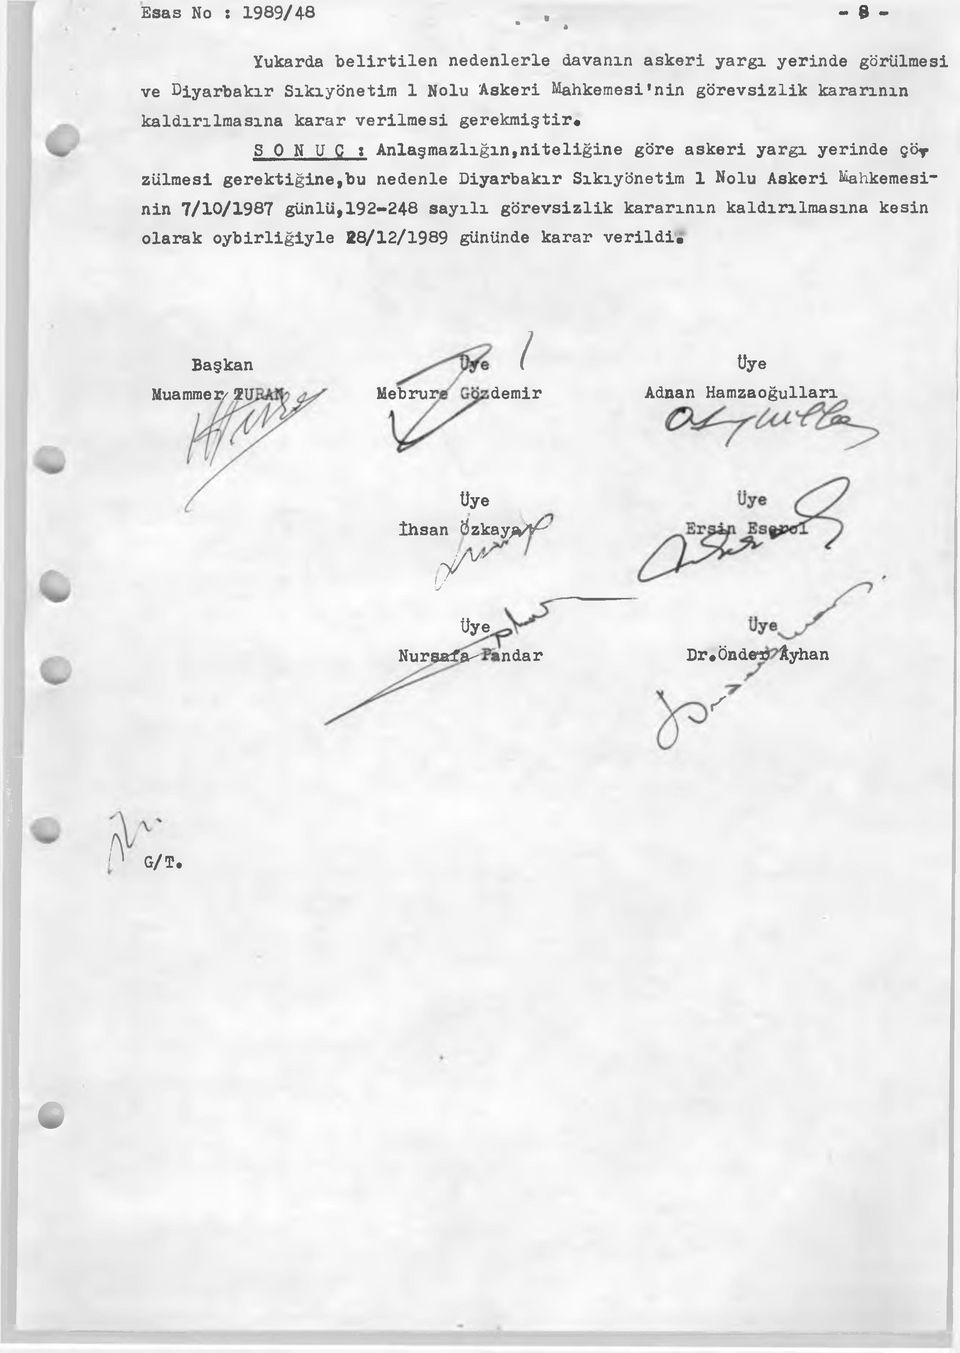 nedenle Diyarbakır Sıkıyönetim 1 Nolu Askeri Mahkemesinin 7/10/1987 günlü,192-248 sayılı görevsizlik kararının kaldırılmasına kesin olarak oybirliğiyle